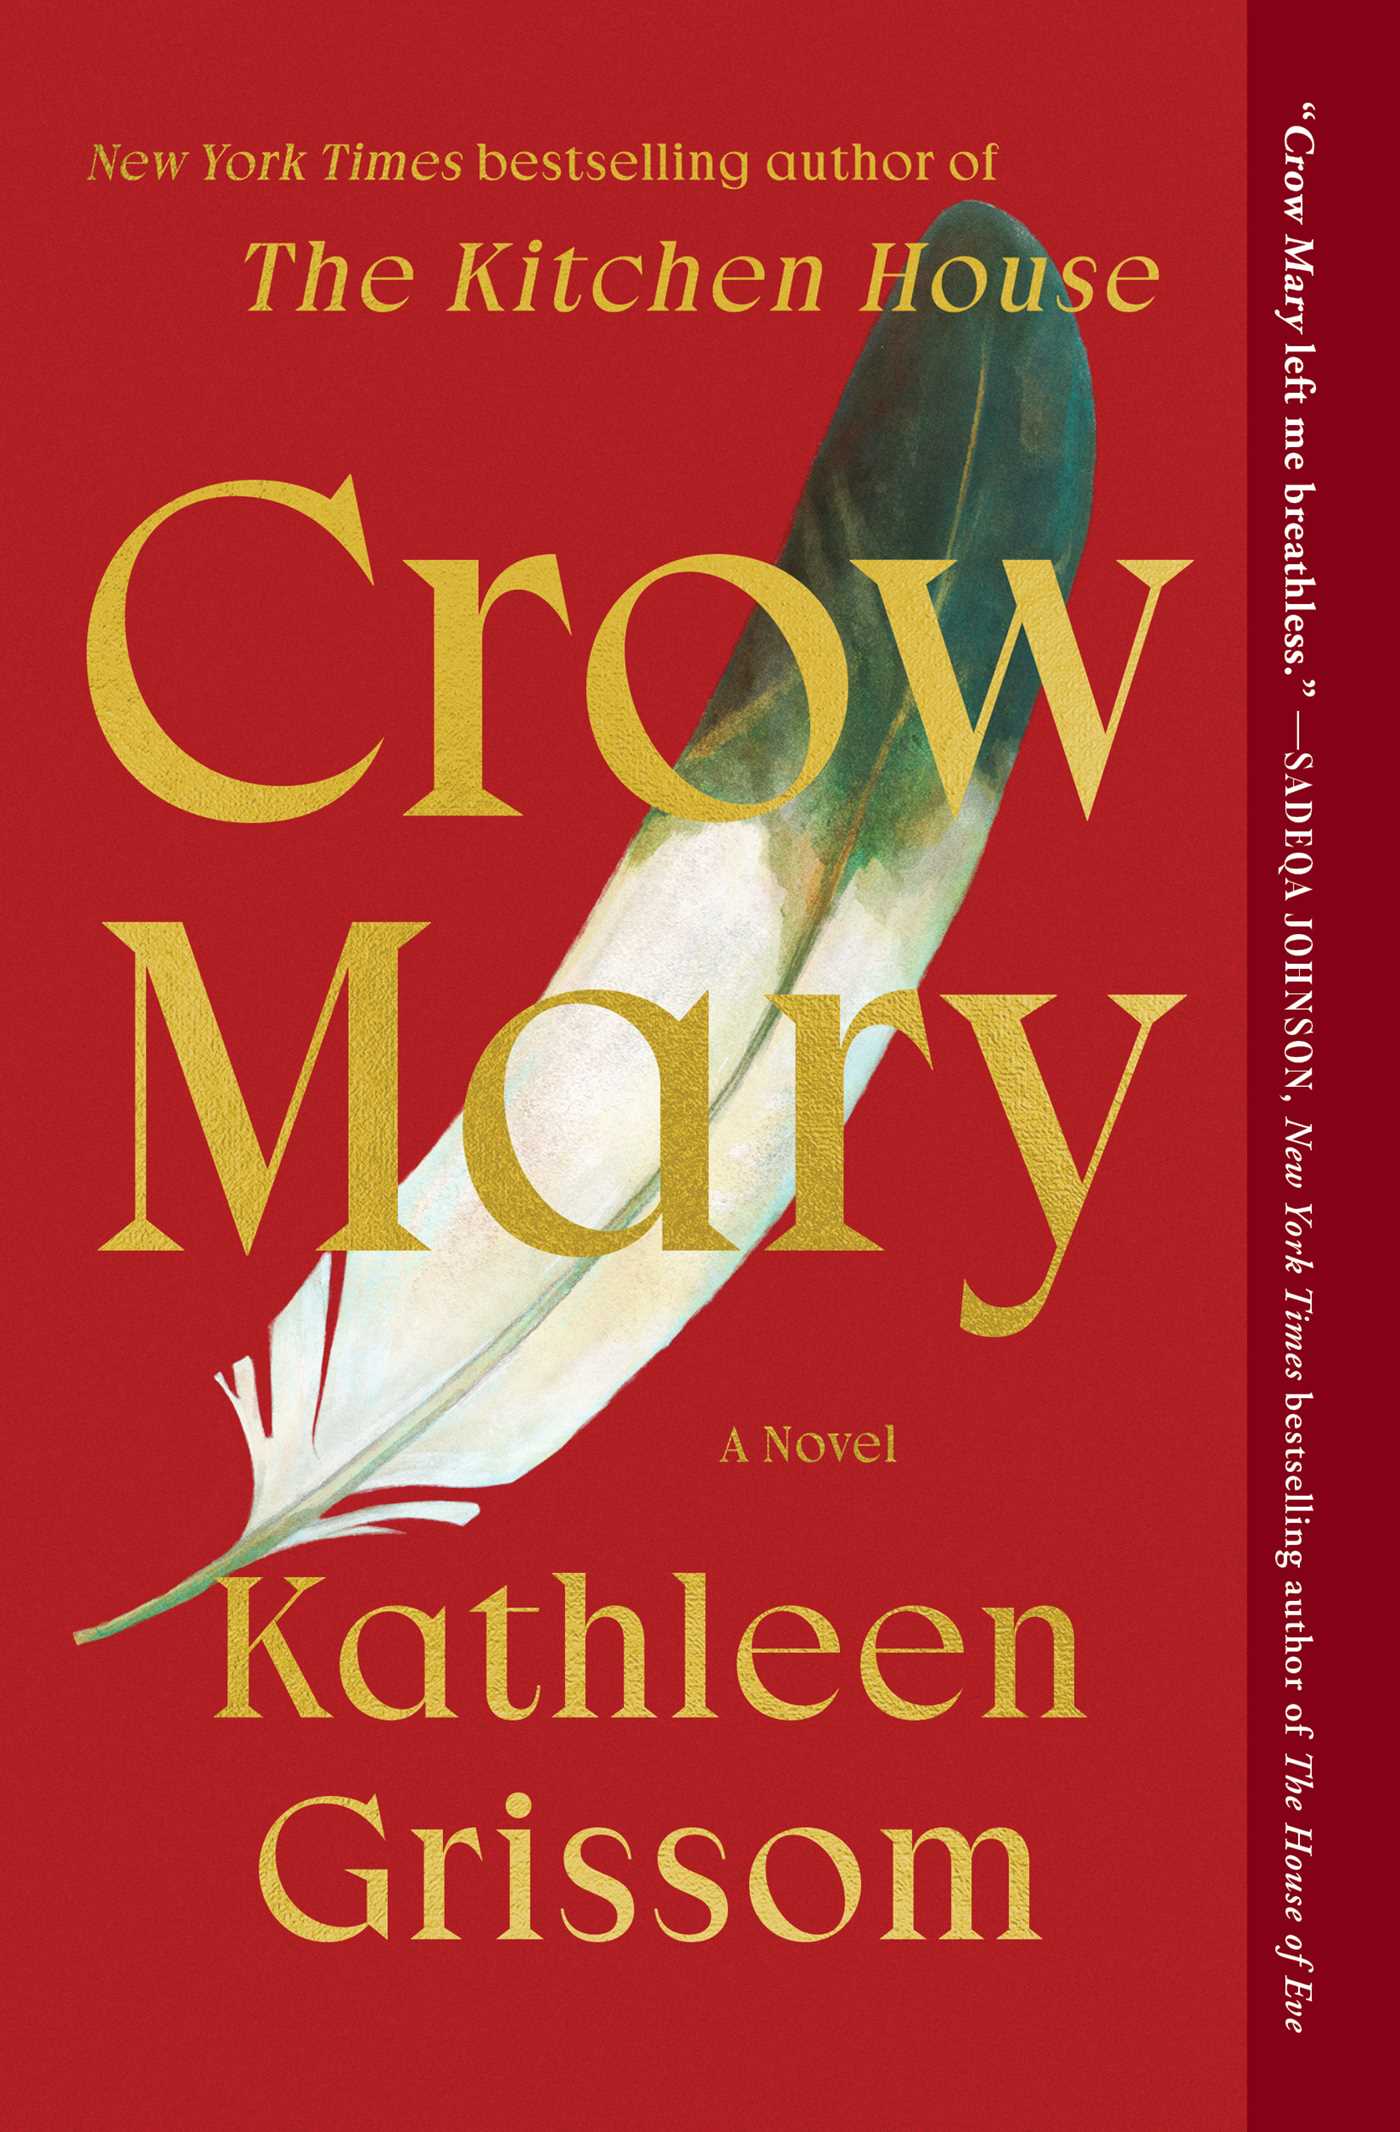 Image de couverture de Crow Mary [electronic resource] : A Novel